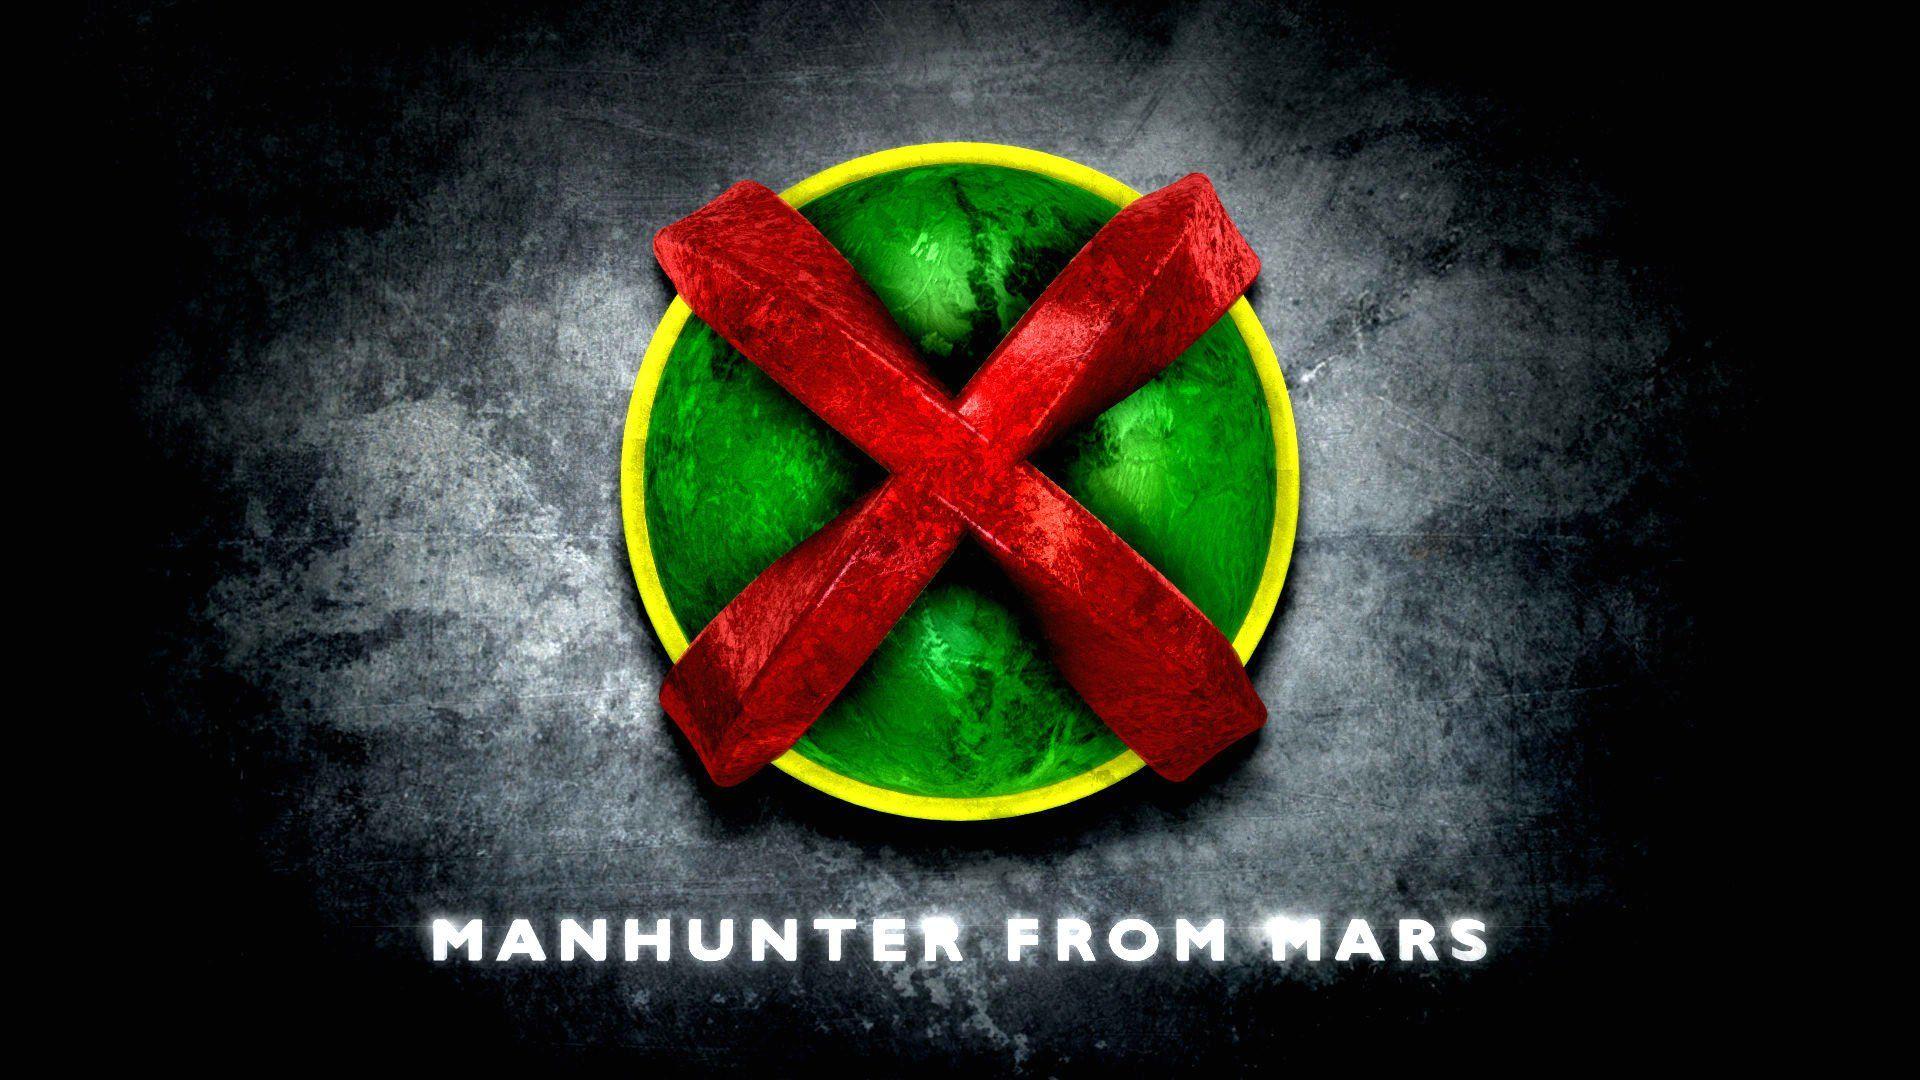 Martian Manhunter Wallpapers, Full HDQ Martian Manhunter Pictures